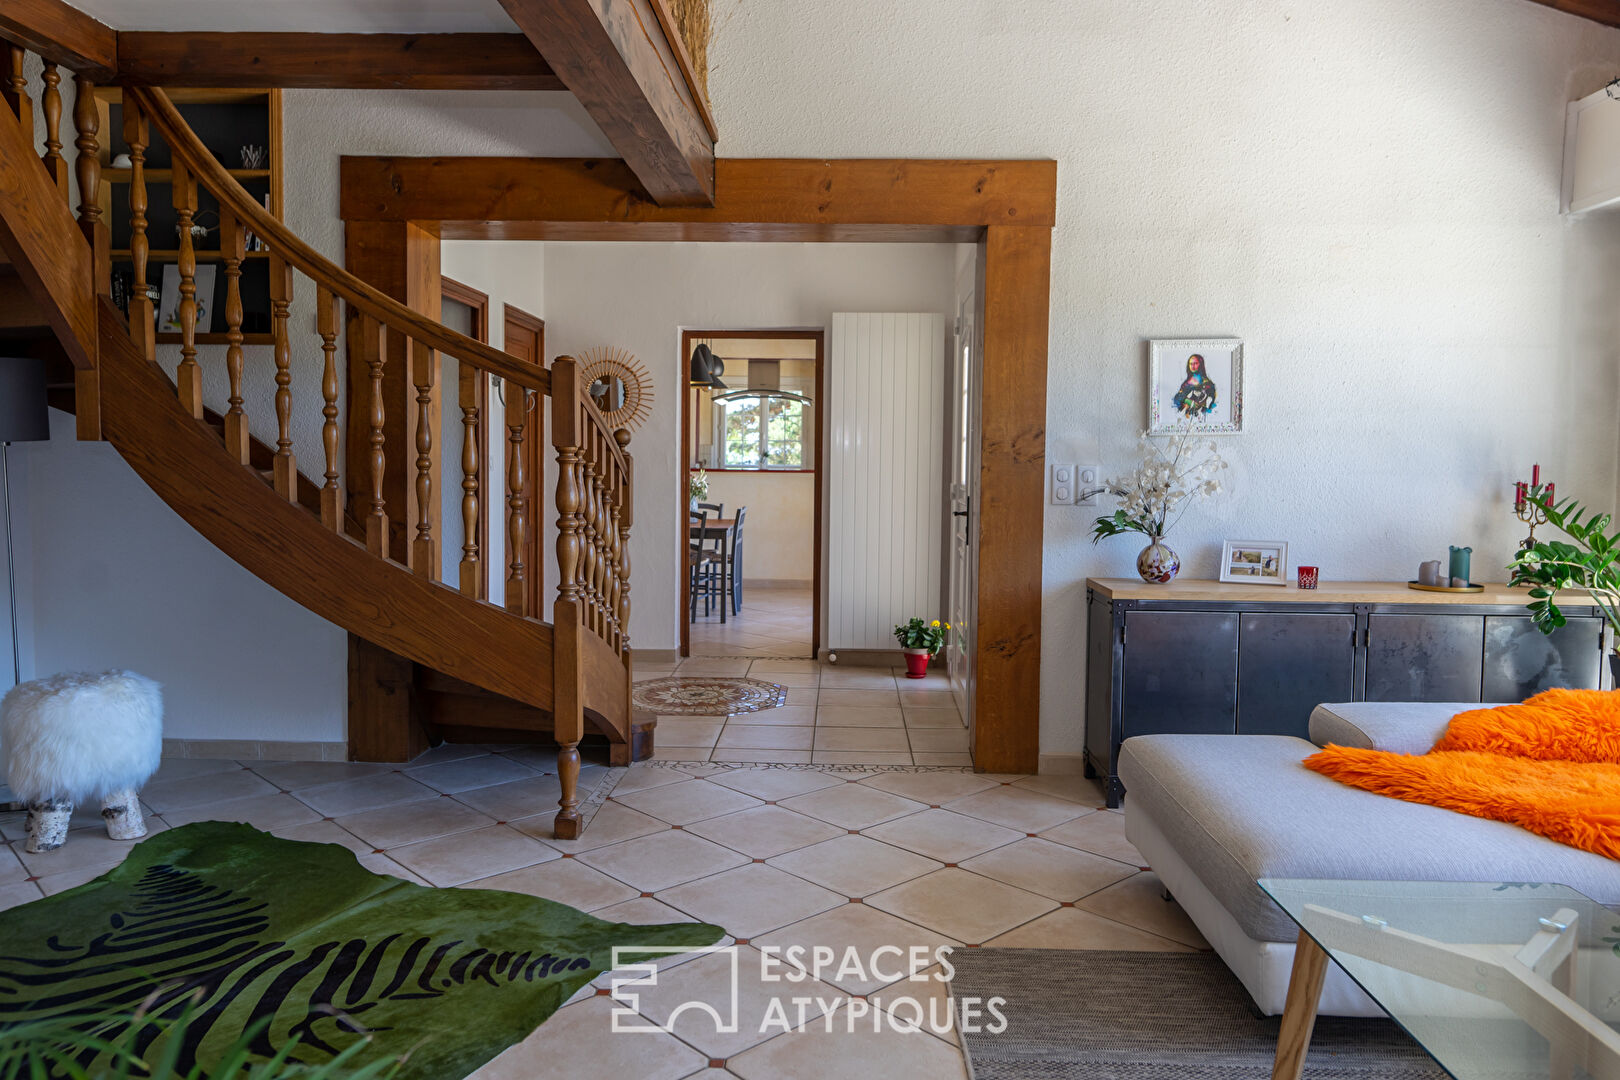 Villa isolée sur près d’un hectare offrant en toute quiétude une vue plongeante sur les monts d’Ardèche.